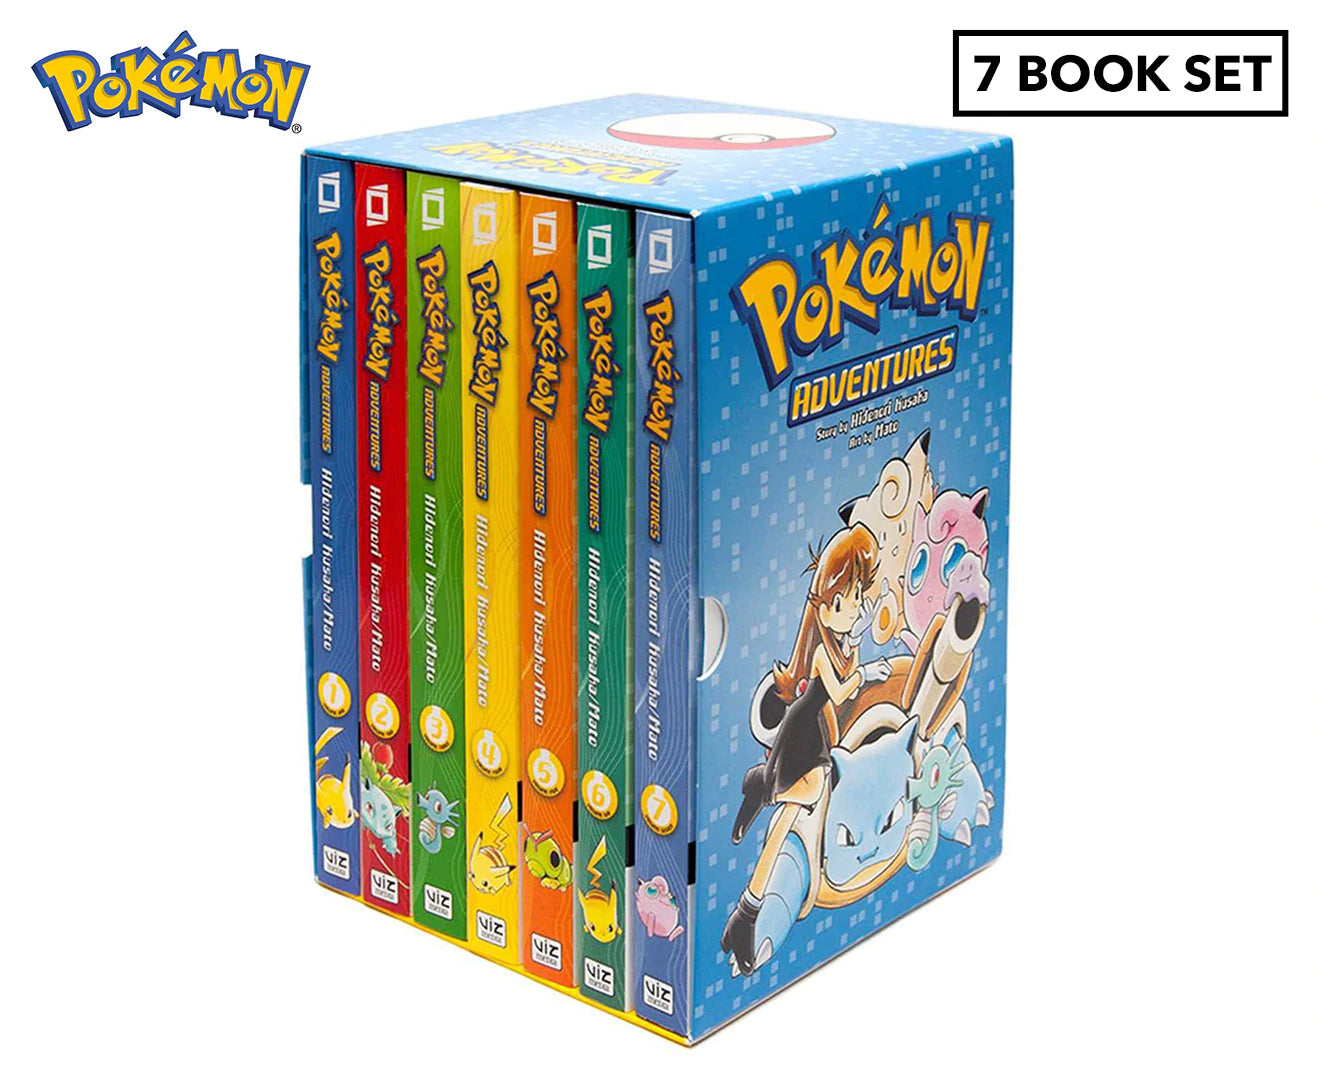 Pokémon Adventures Red & Blue Box Set: Set includes Vol. 1-7